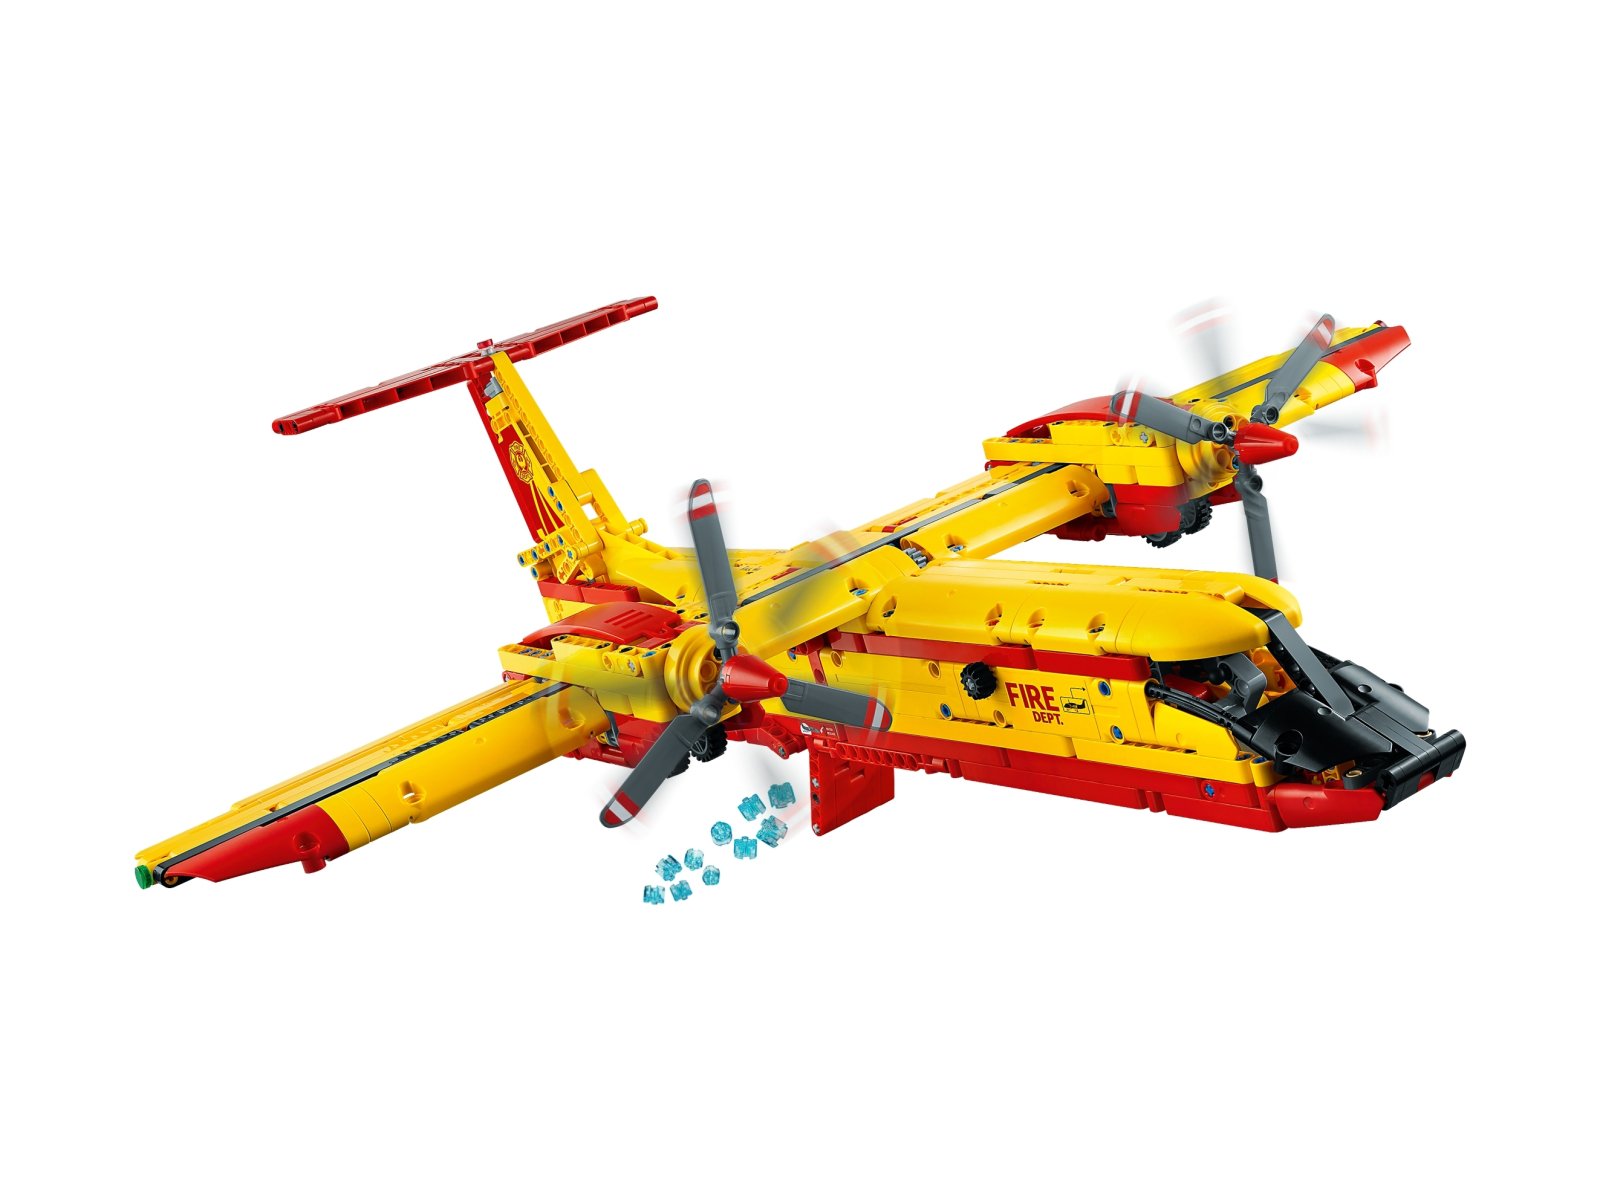 LEGO 42152 Technic Samolot gaśniczy